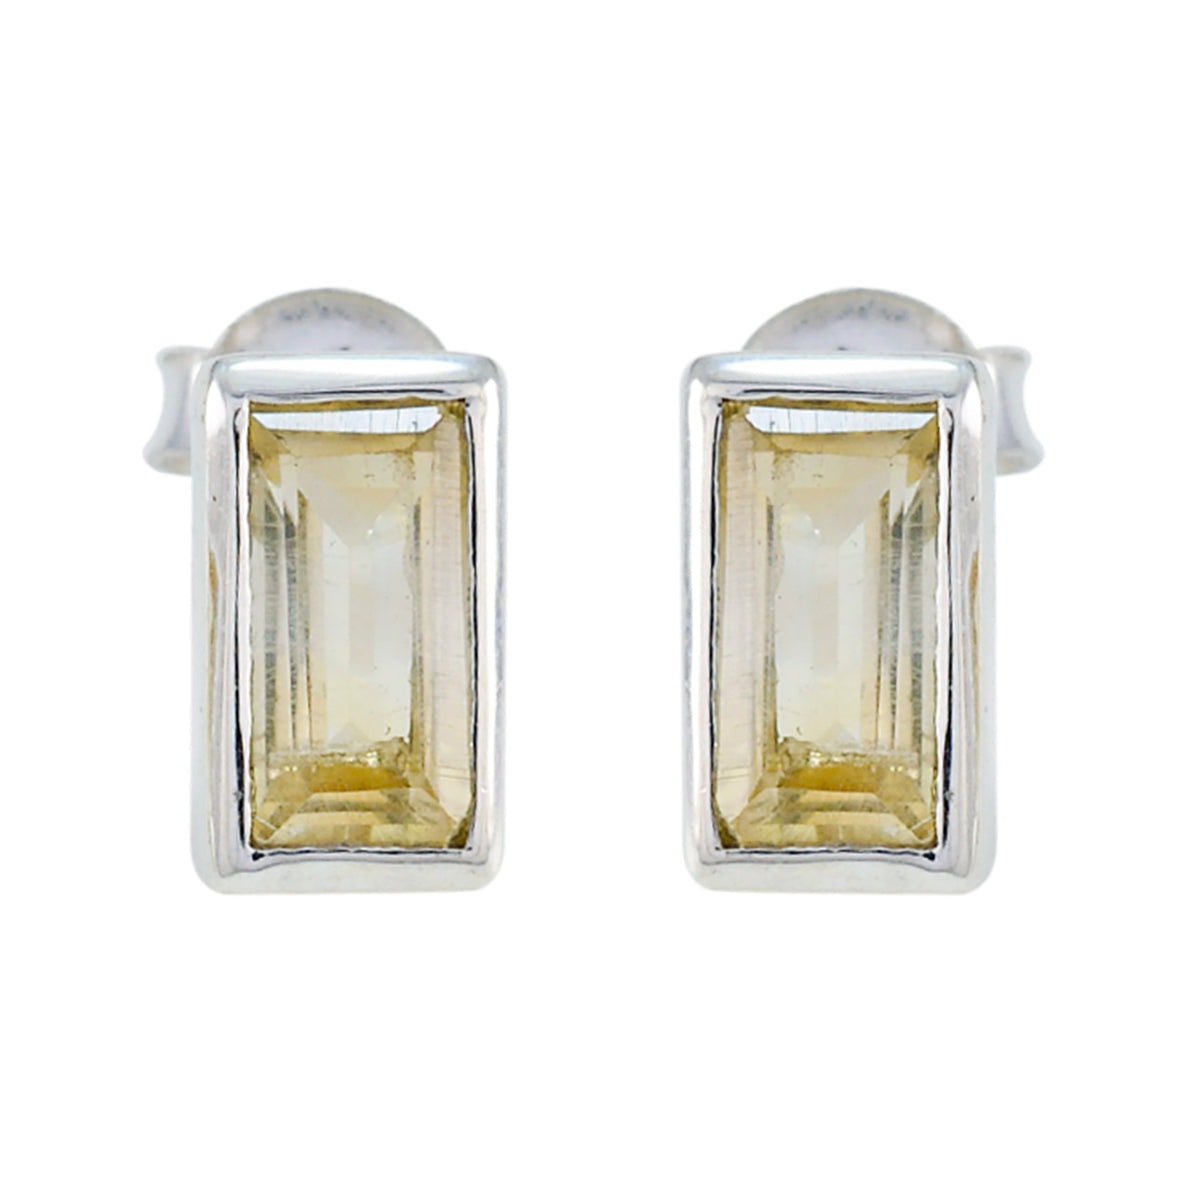 Riyo schön aussehender Sterlingsilber-Ohrring für Damen, Citrin-Ohrring, Lünettenfassung, gelber Ohrring, Ohrstecker